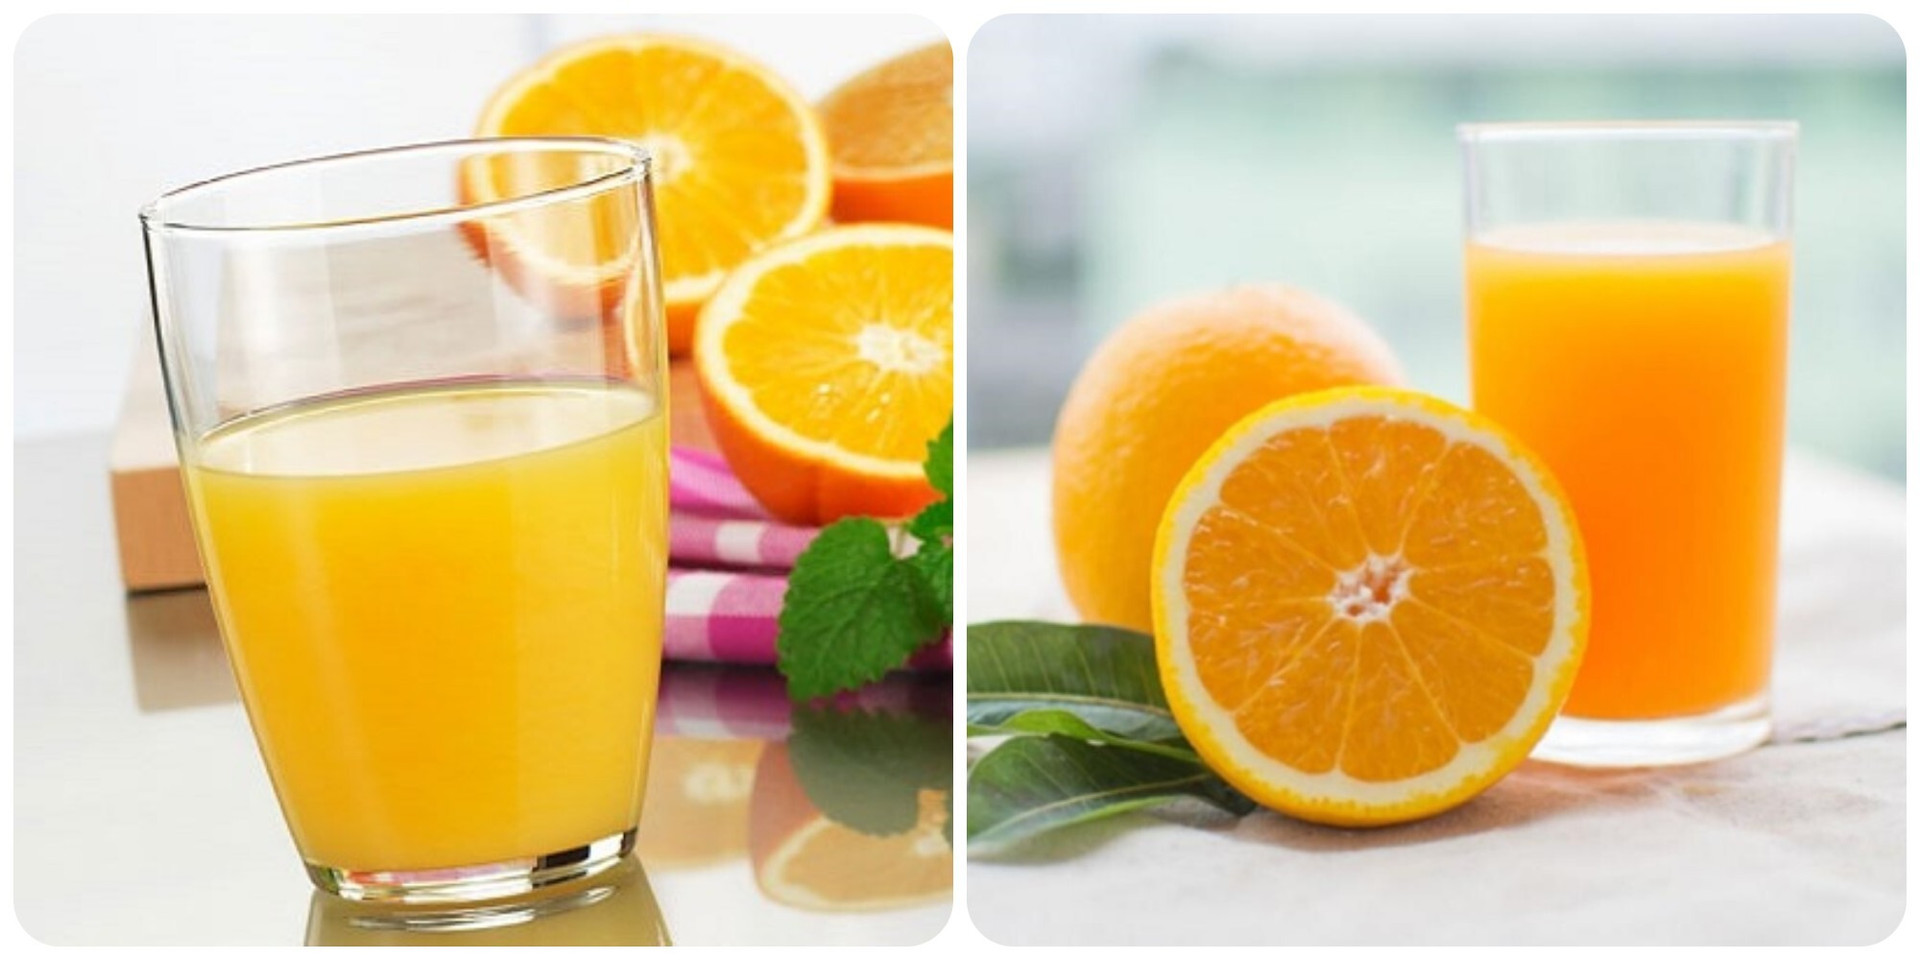 Uống nước cam vào thời điểm nào tốt nhất? - 1